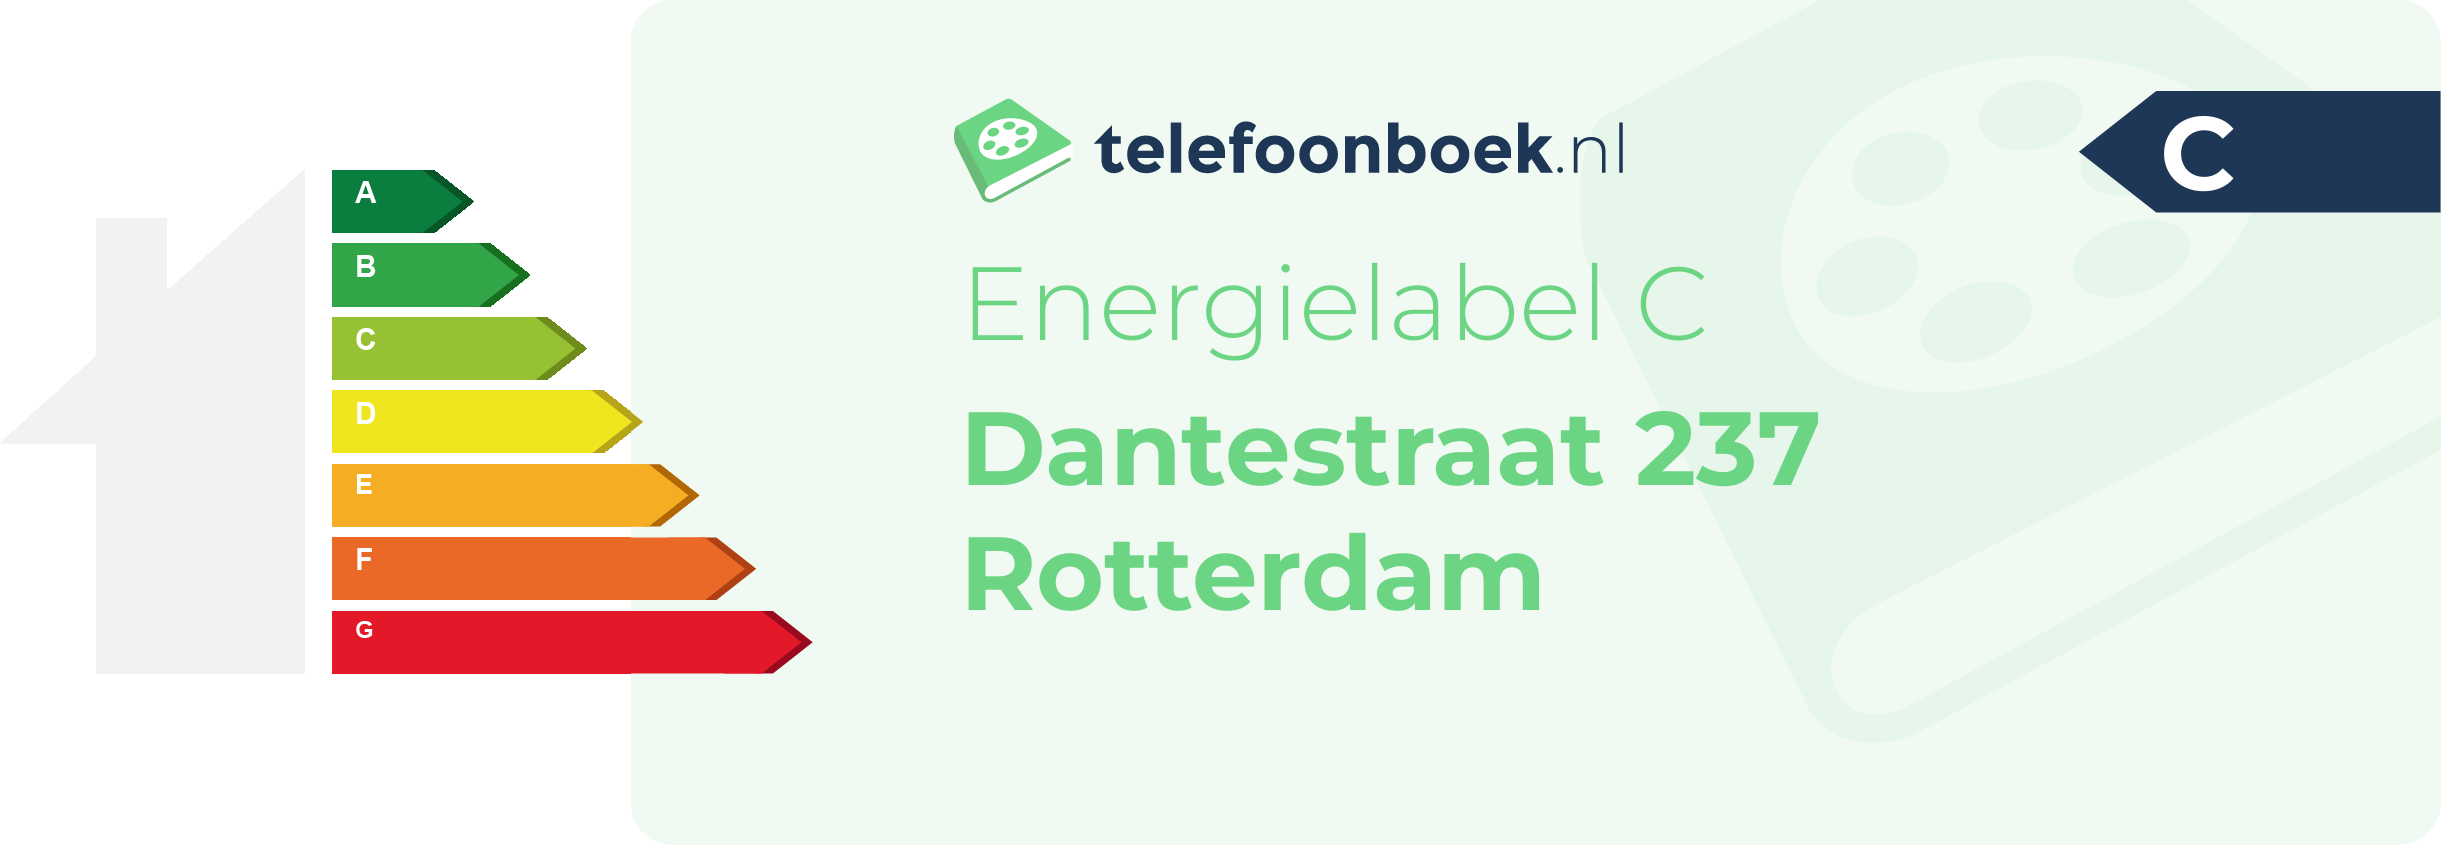 Energielabel Dantestraat 237 Rotterdam